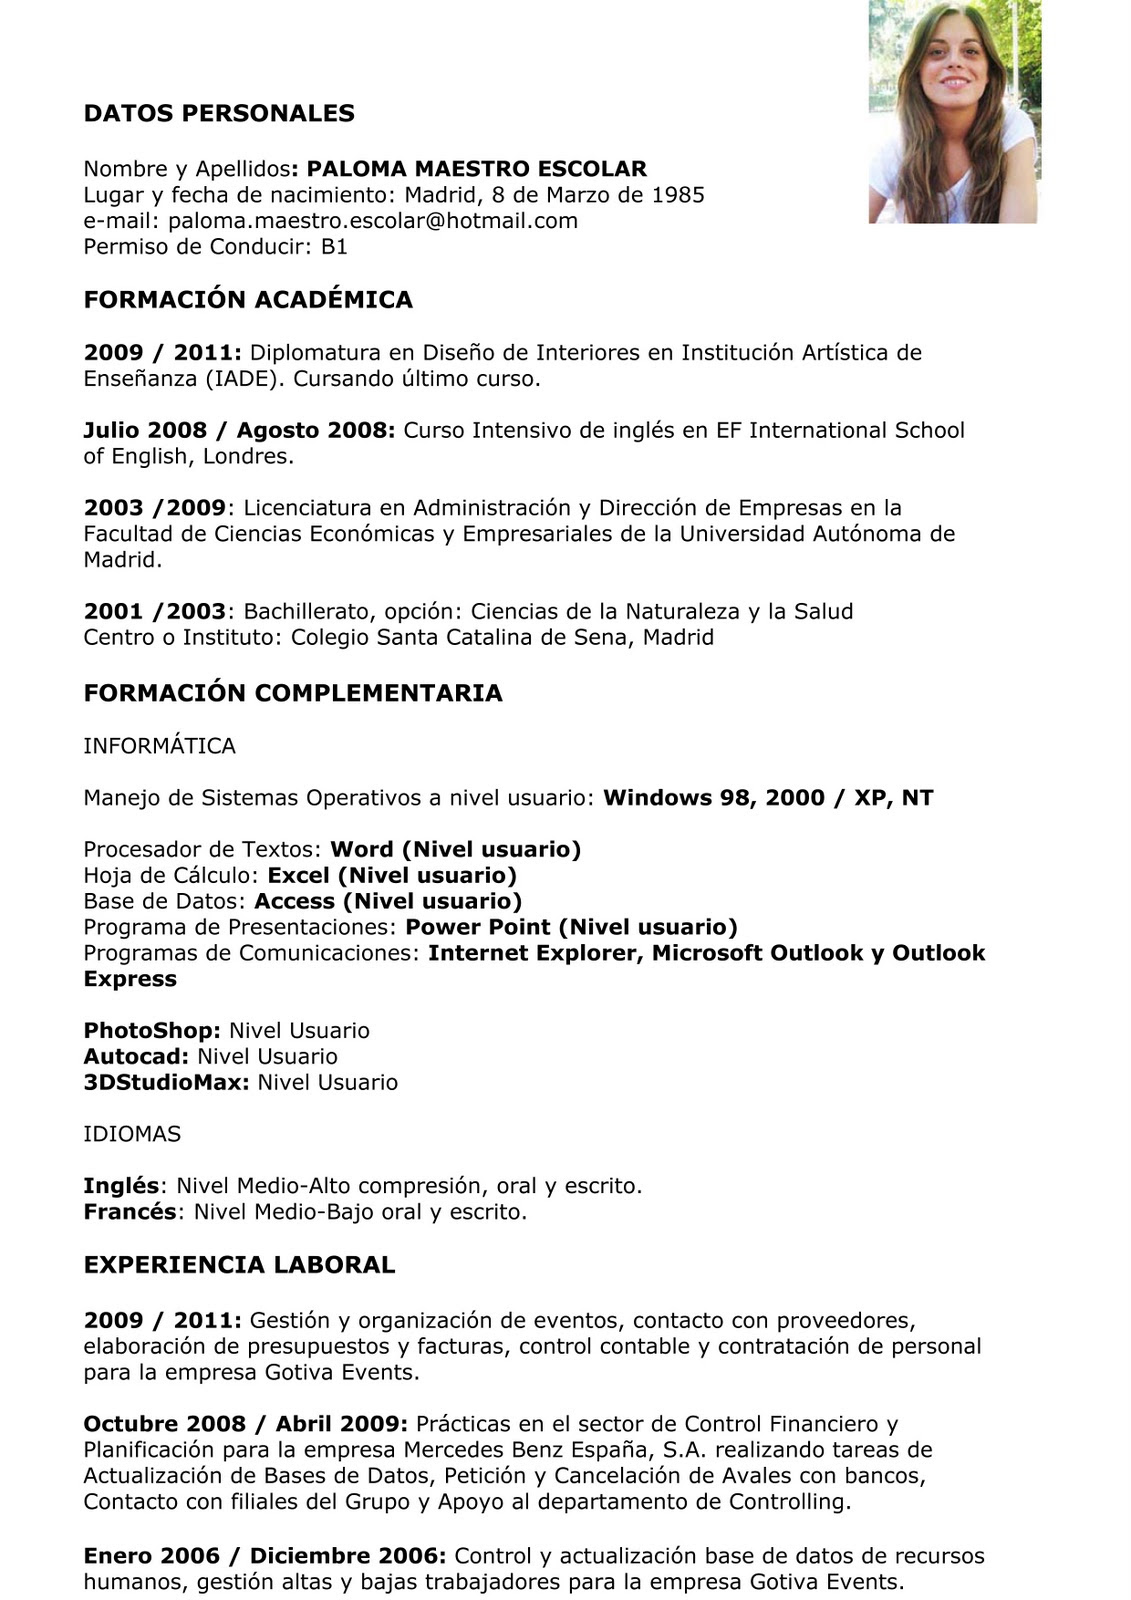 Curriculum Vitae Curriculum Vitae Em Portugues